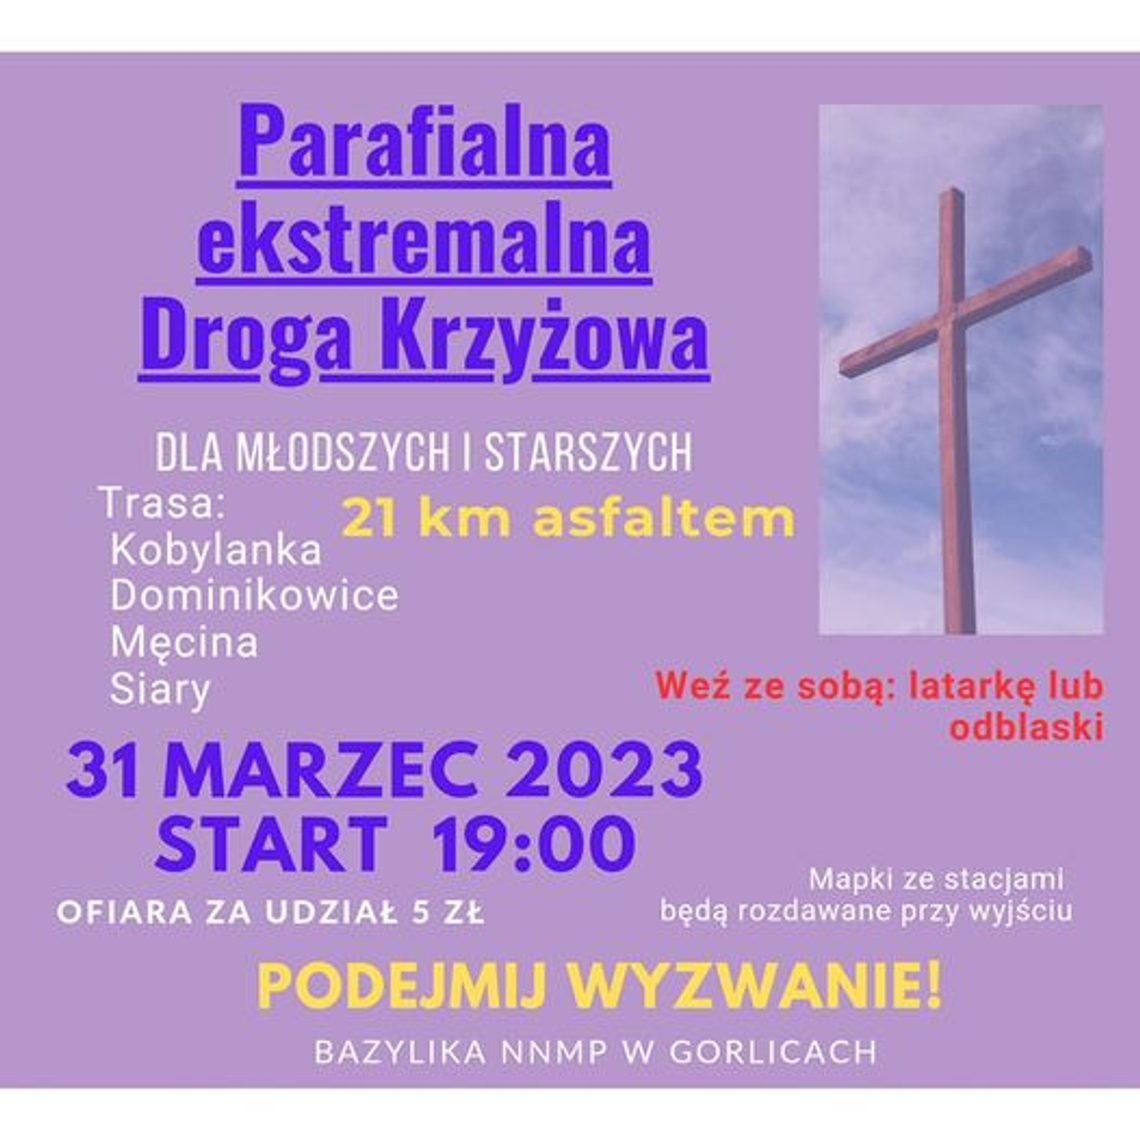 Parafialna ekstremalna Droga Krzyżowa – Bazylika Gorlice | halogorlice.info